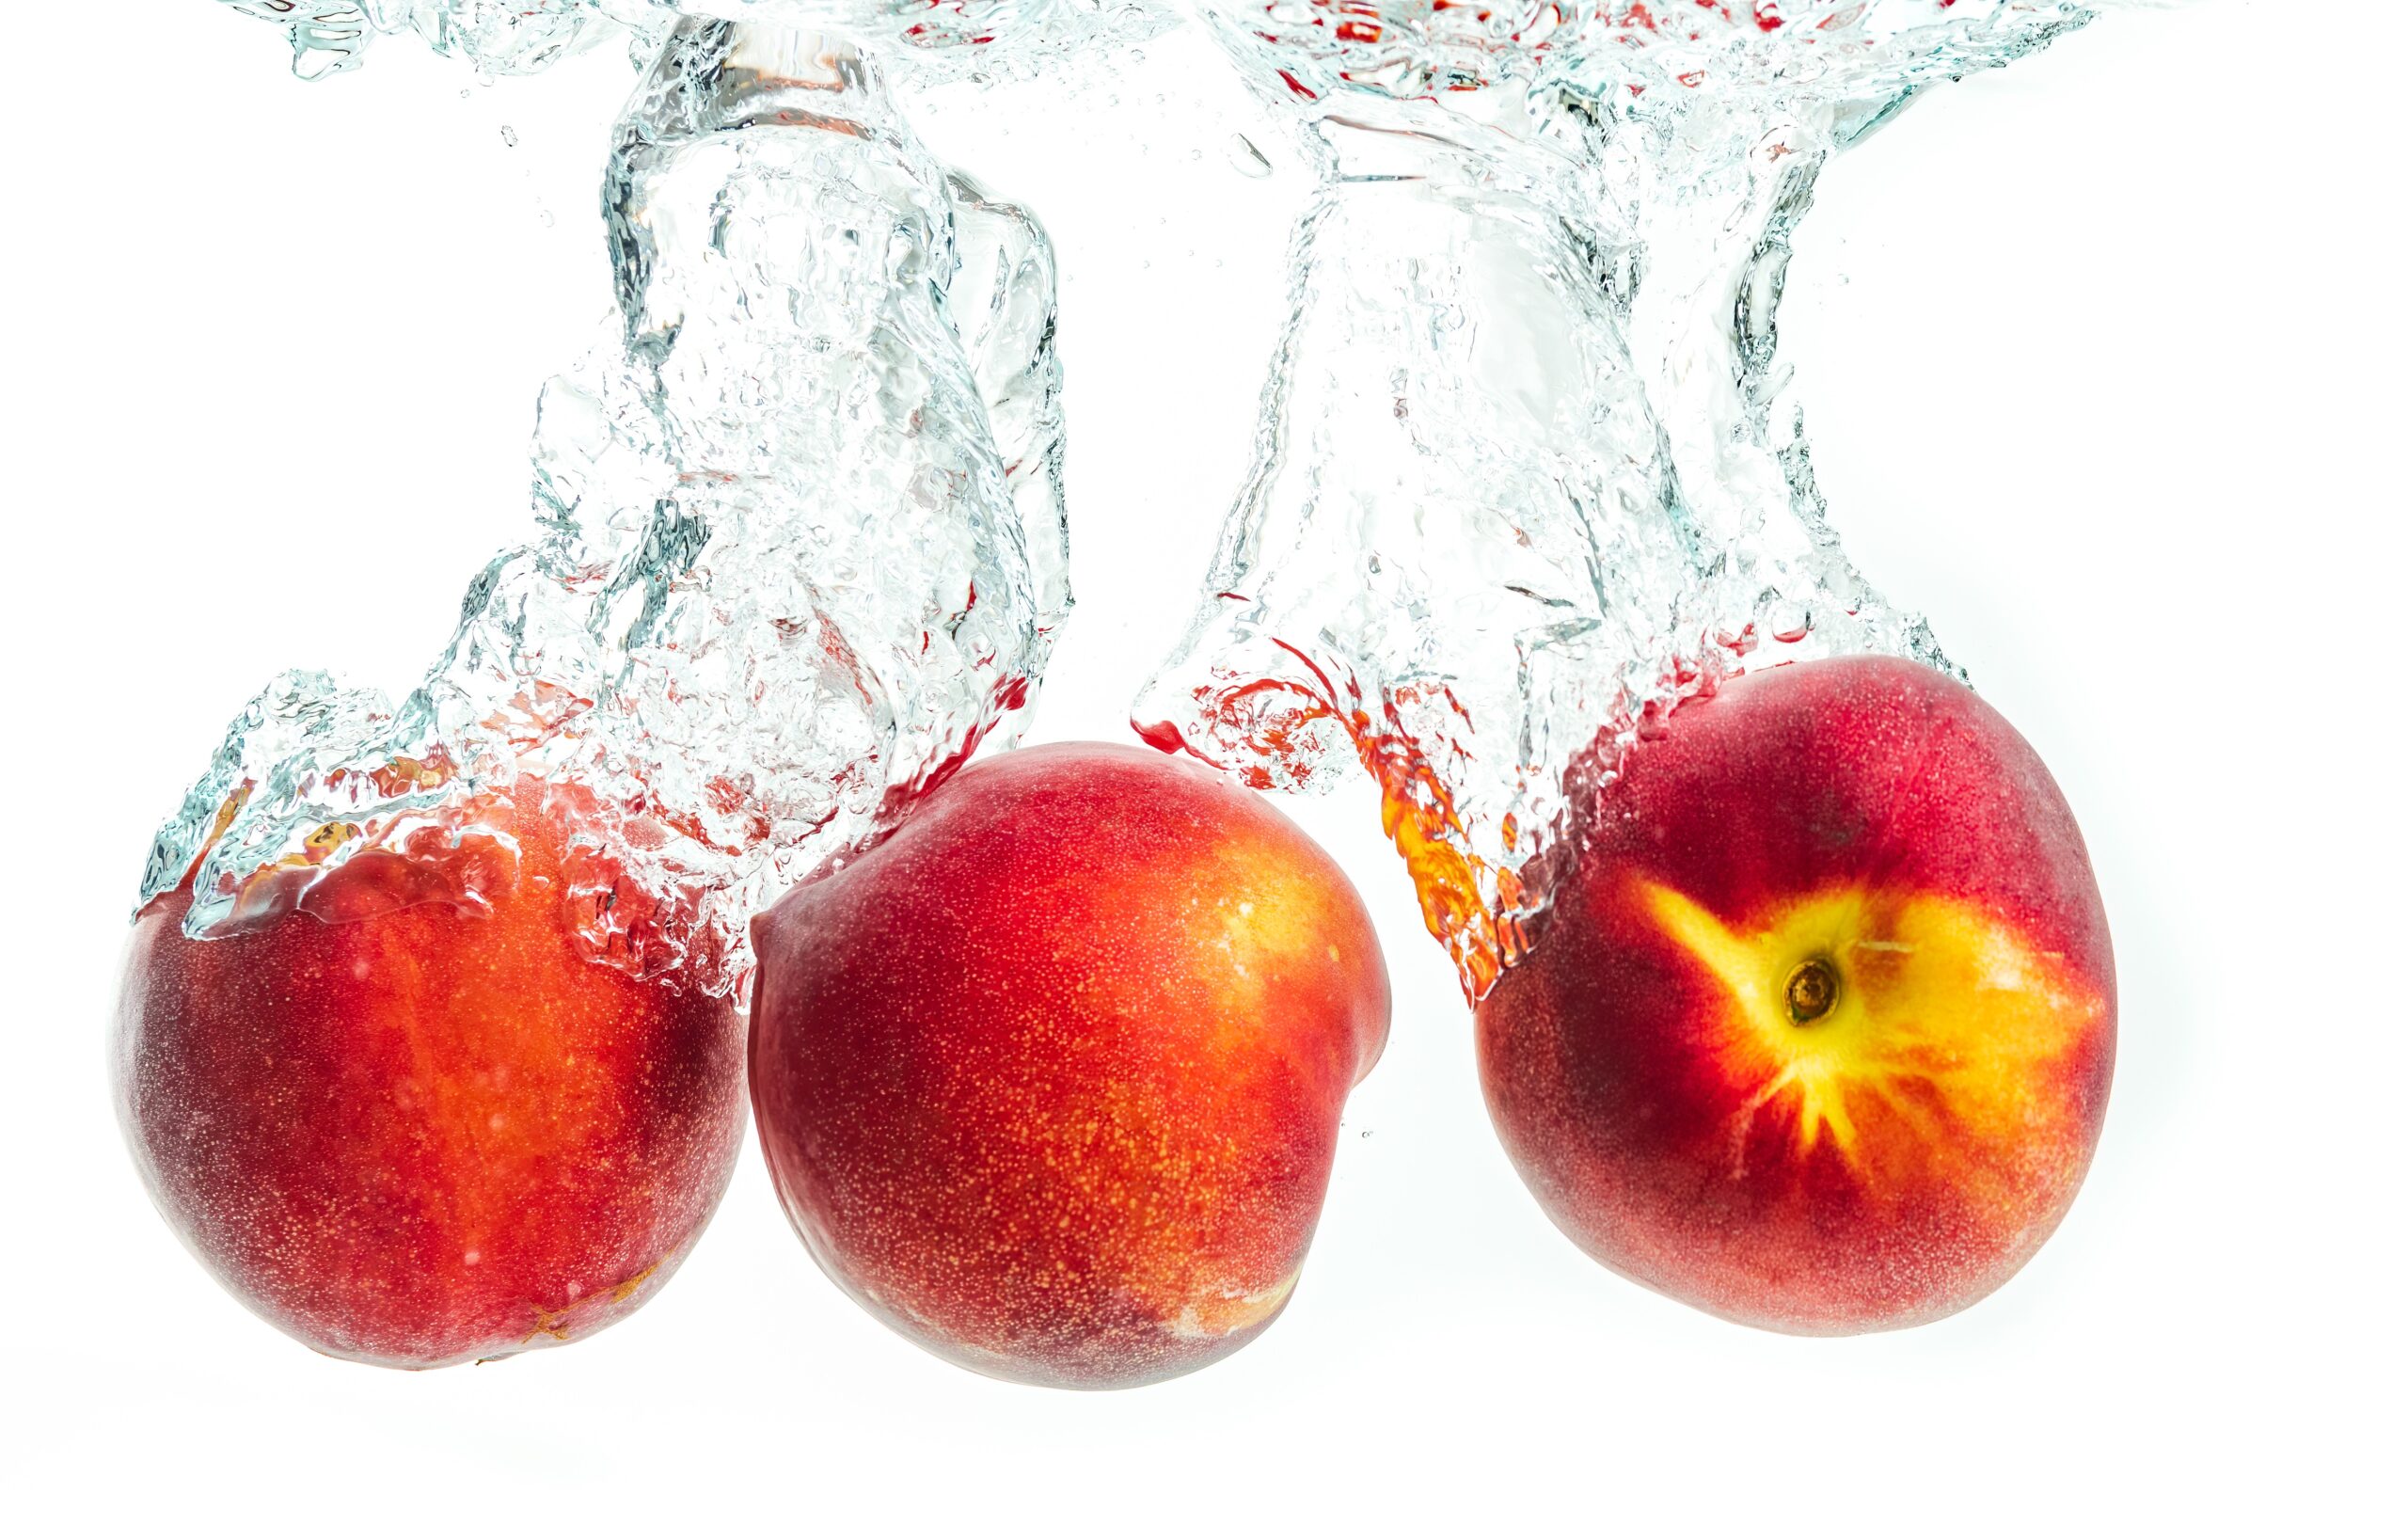 Nektari meyvelerinin suya atılma düşme anı ve görüntüsü su sıçraması